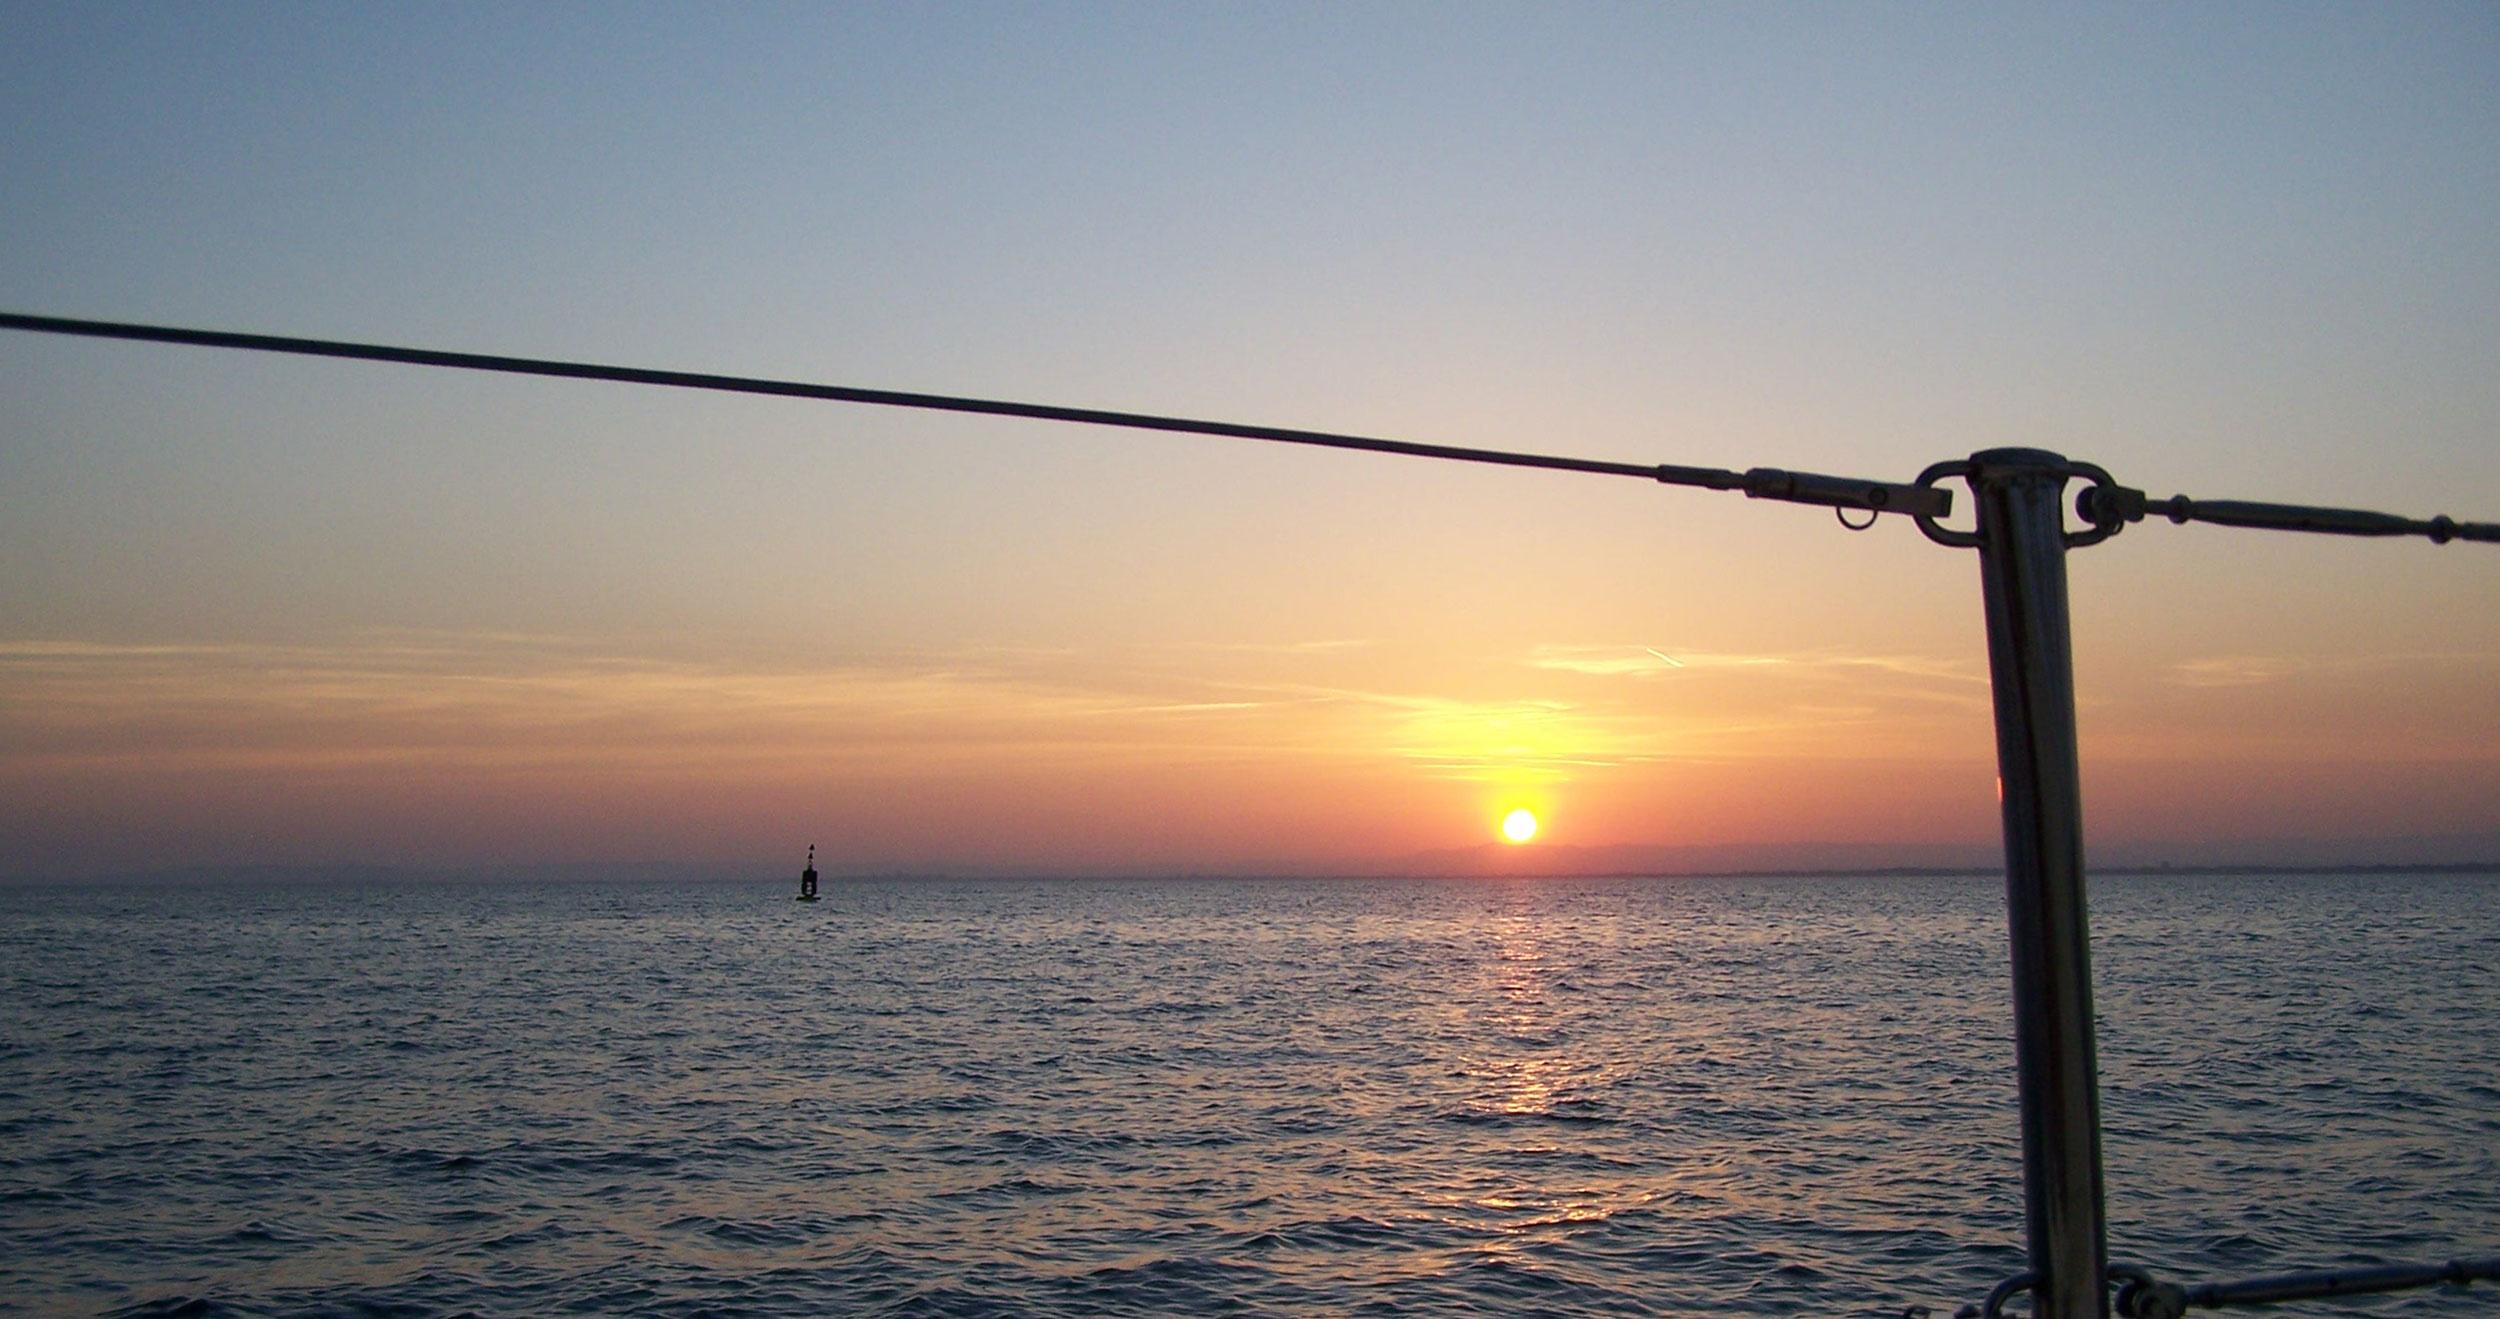 Location d'un voilier avec skipper au coucher du soleil en Corse ou en baie d'Aigues Mortes